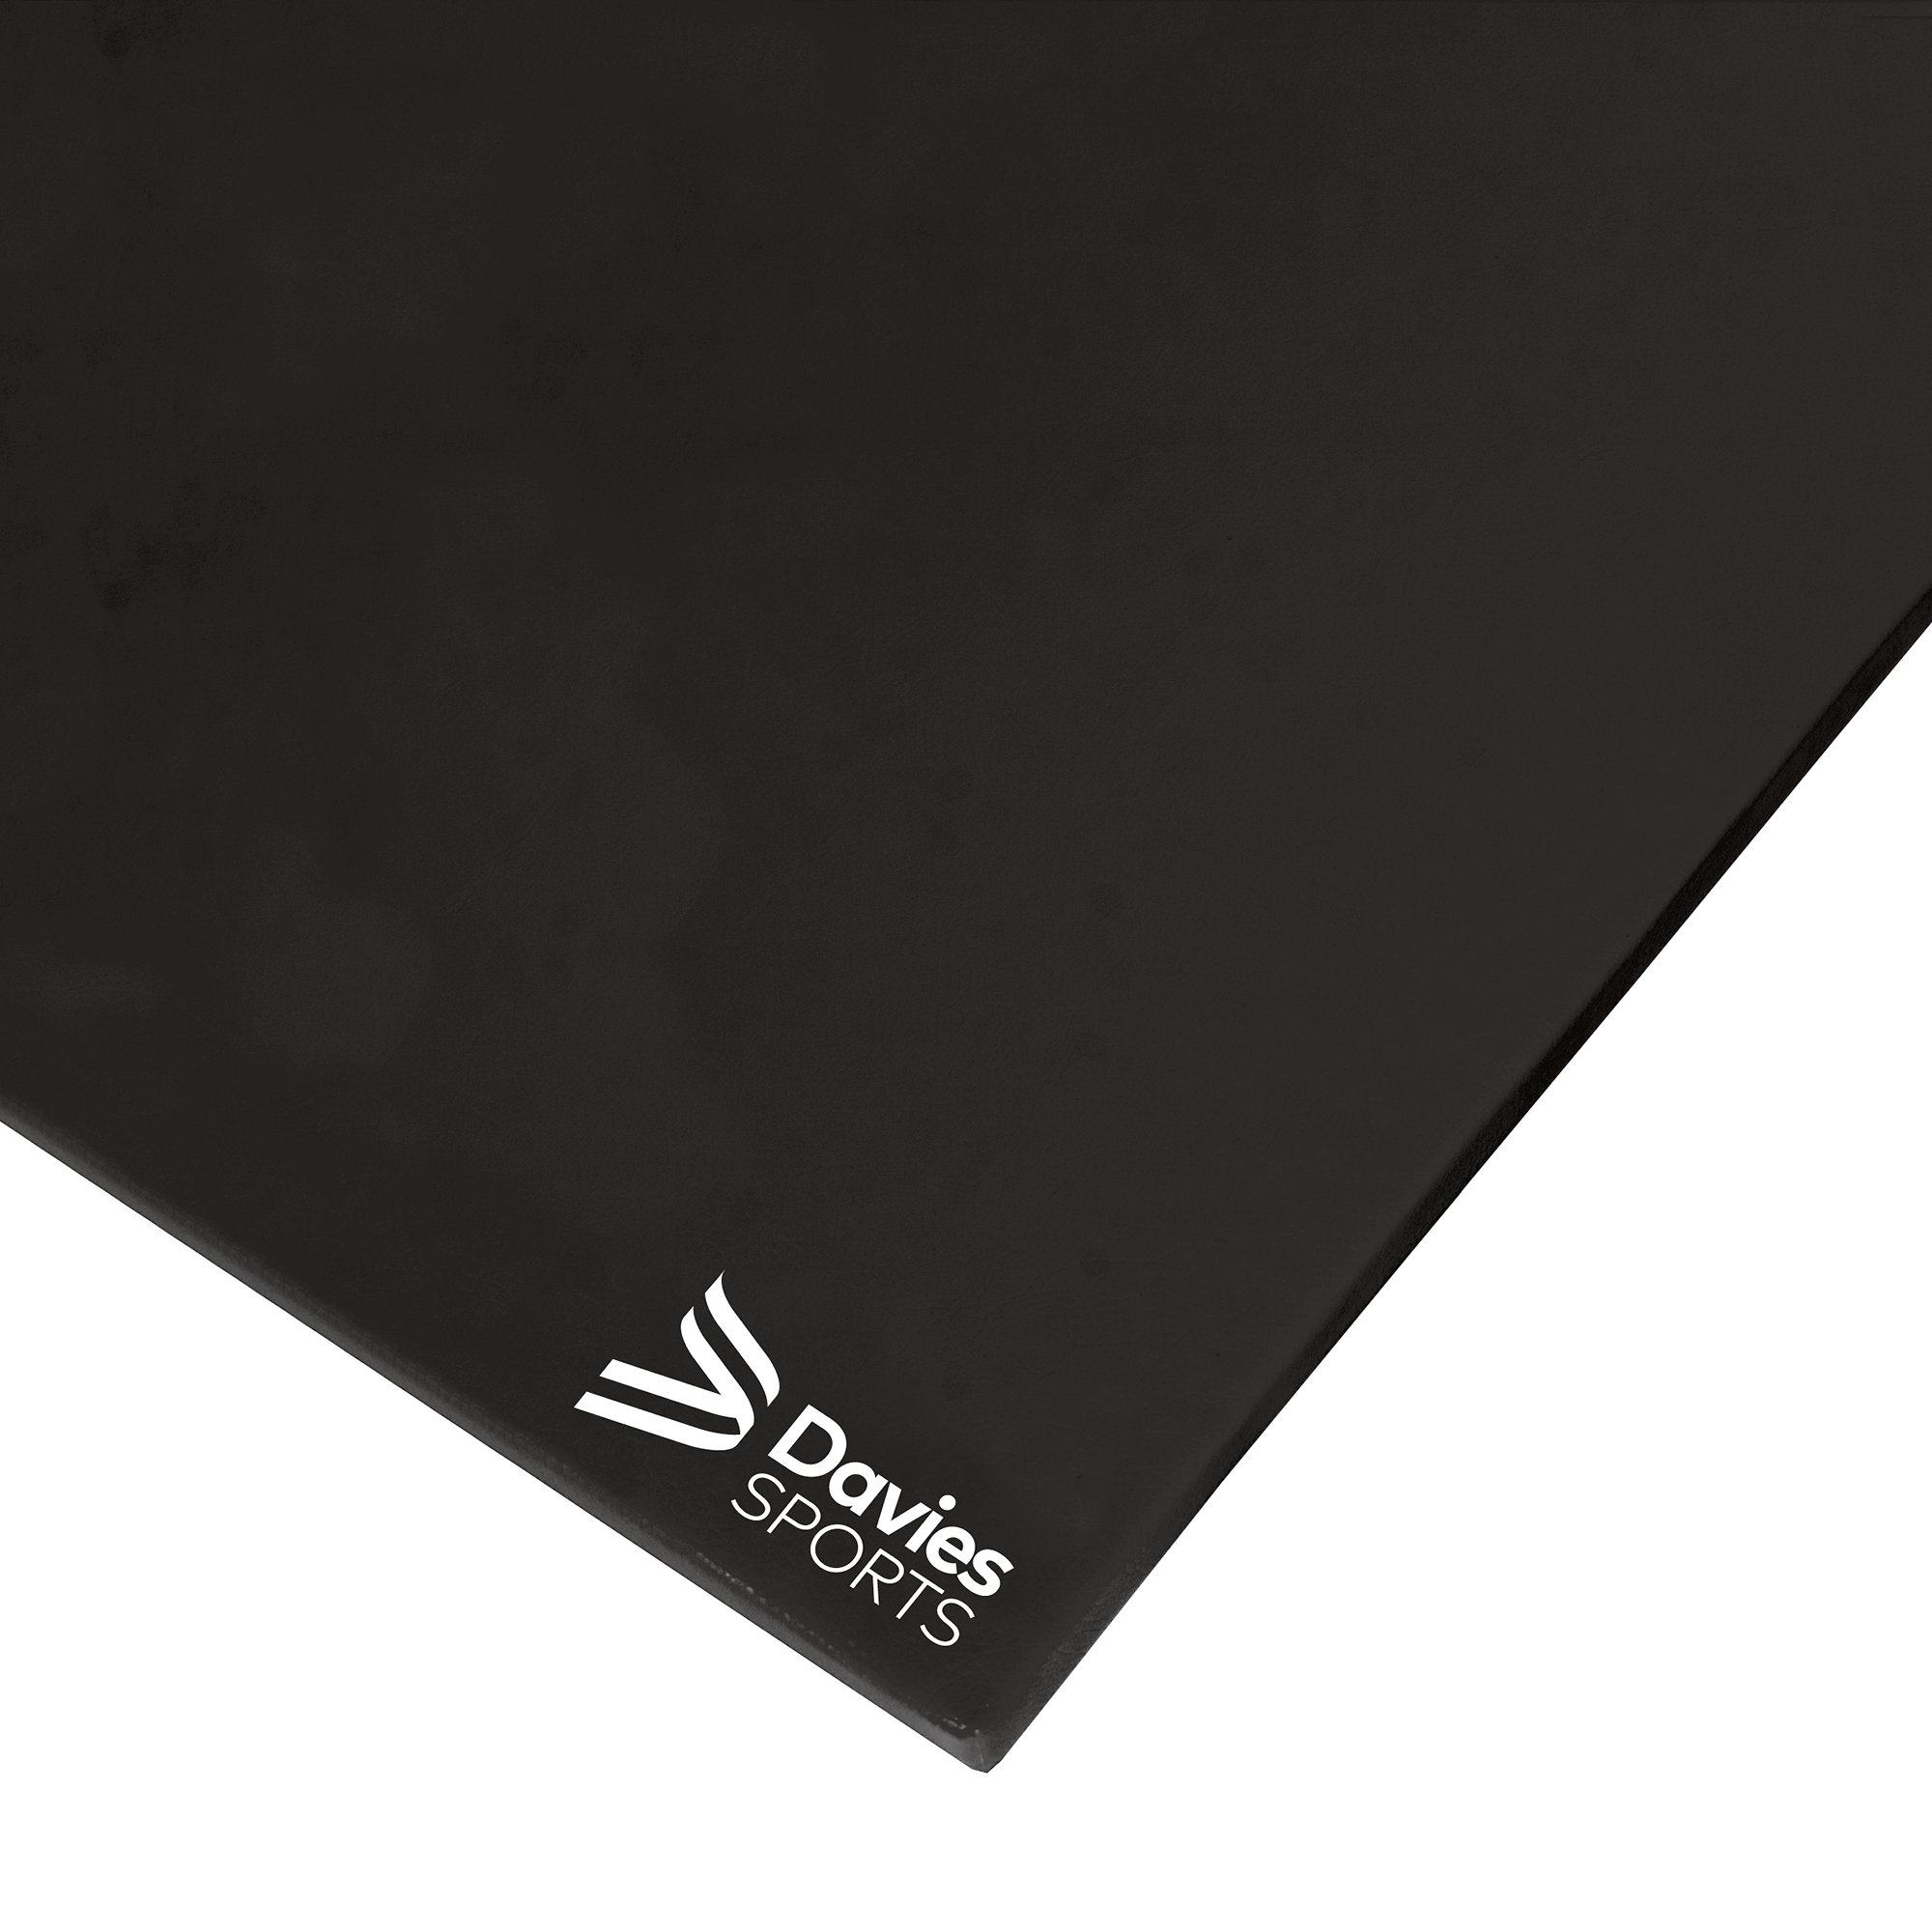 Davies Sports Lightweight Gym Mat Standard Black Link-a-Lay - 1.22m x 0.91m x 25mm